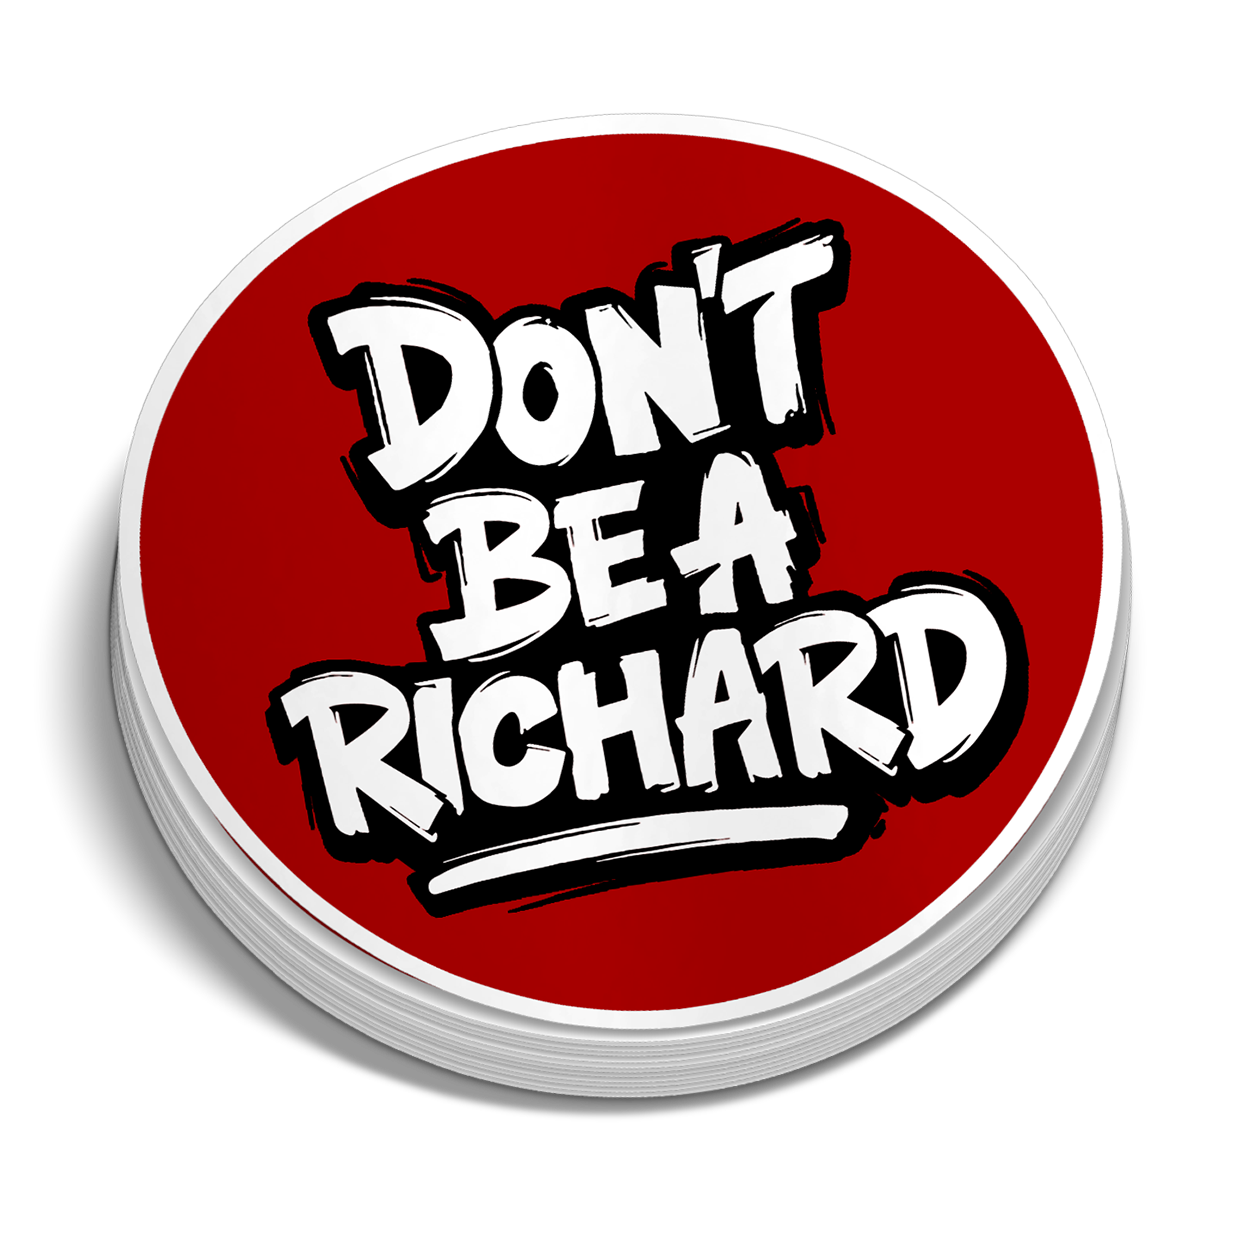 Richard - Hard Hat Sticker